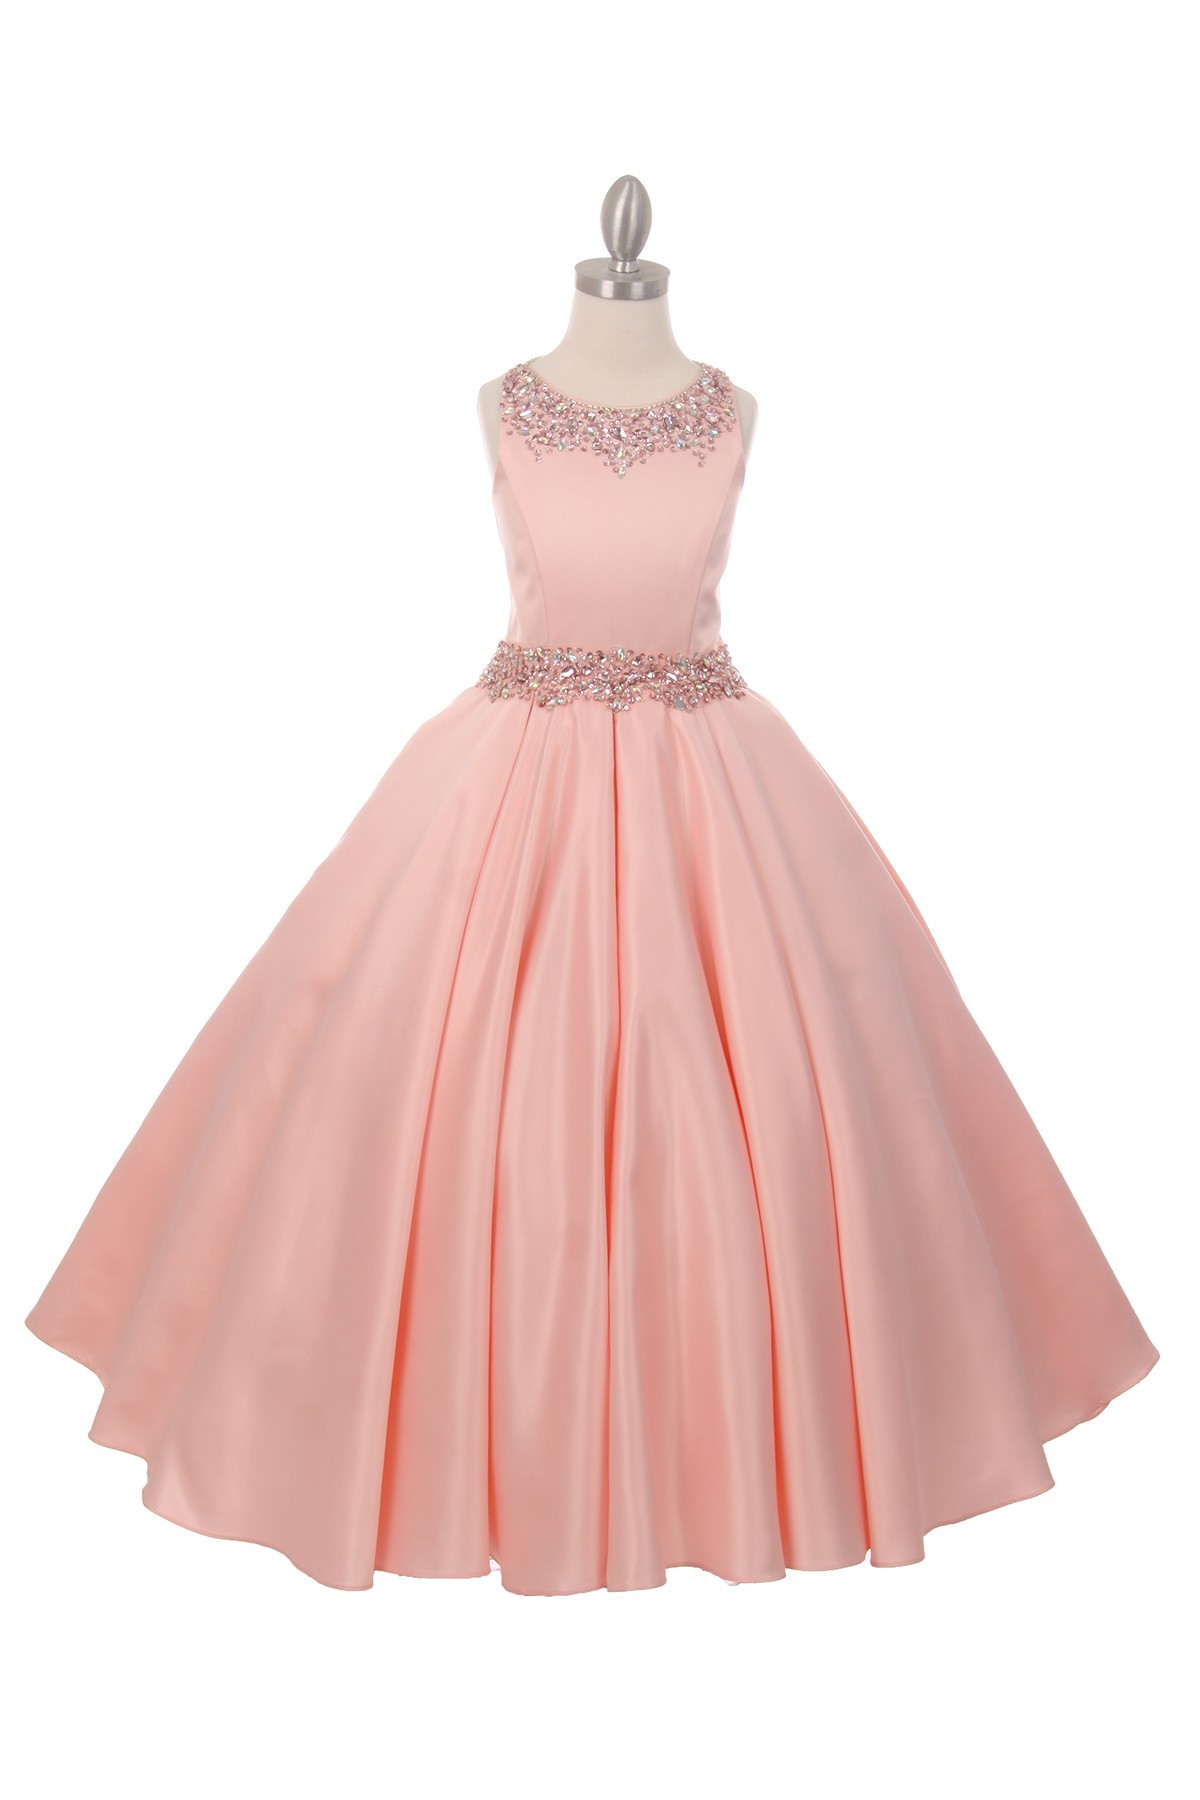 blush Junior bridesmaid dresses